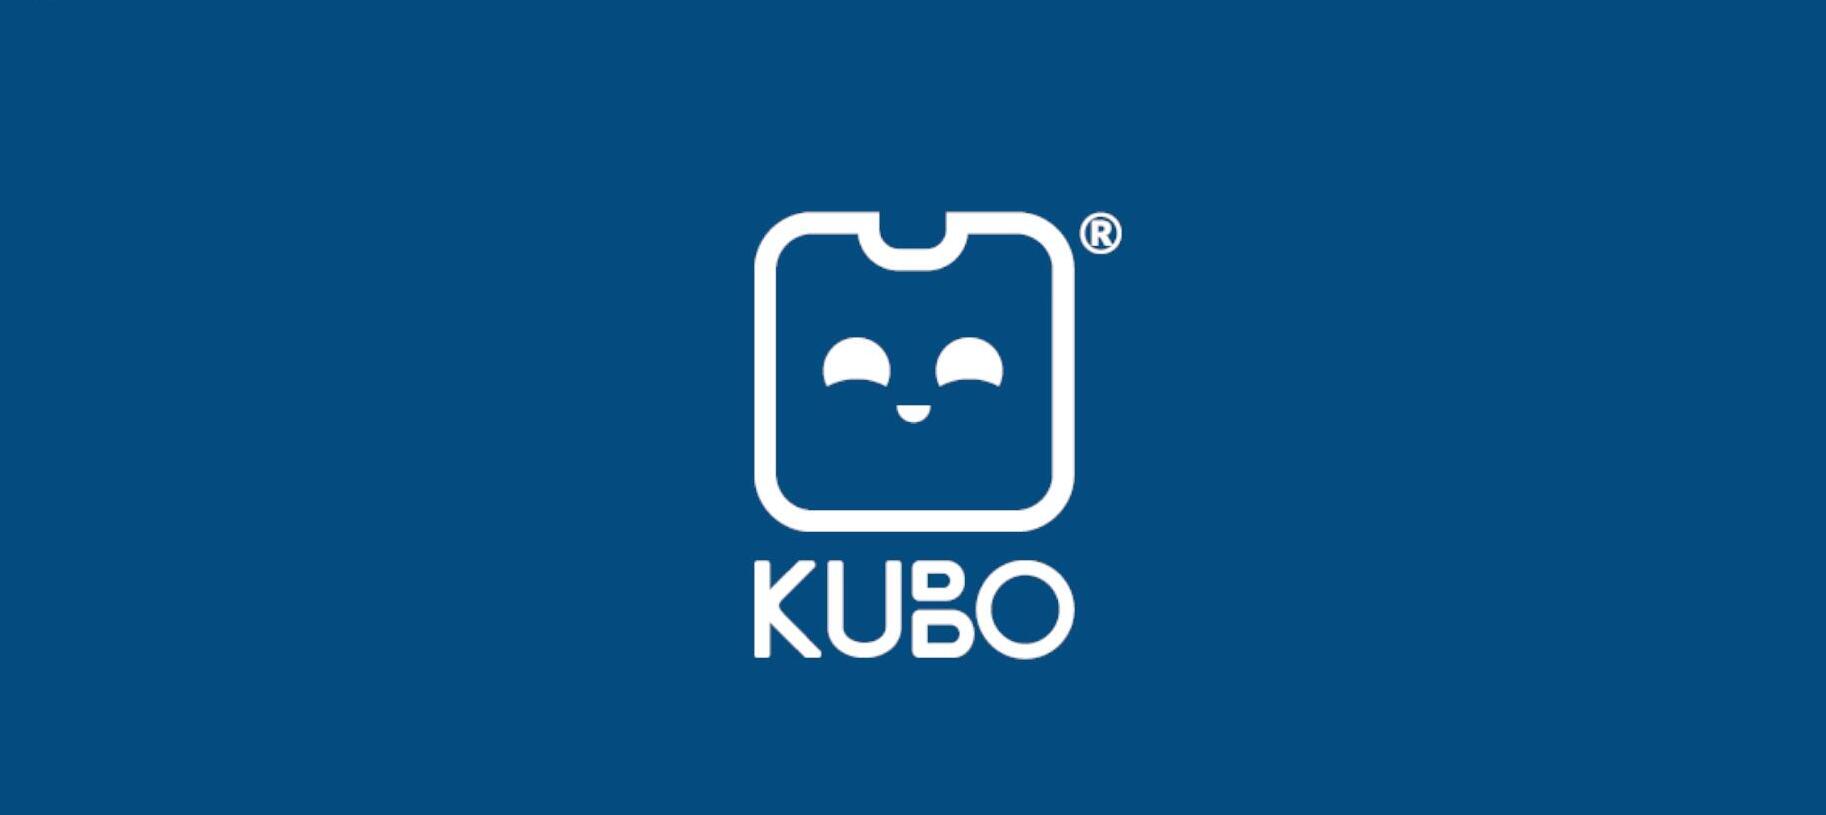 KUBO TagTile ® 活动平台